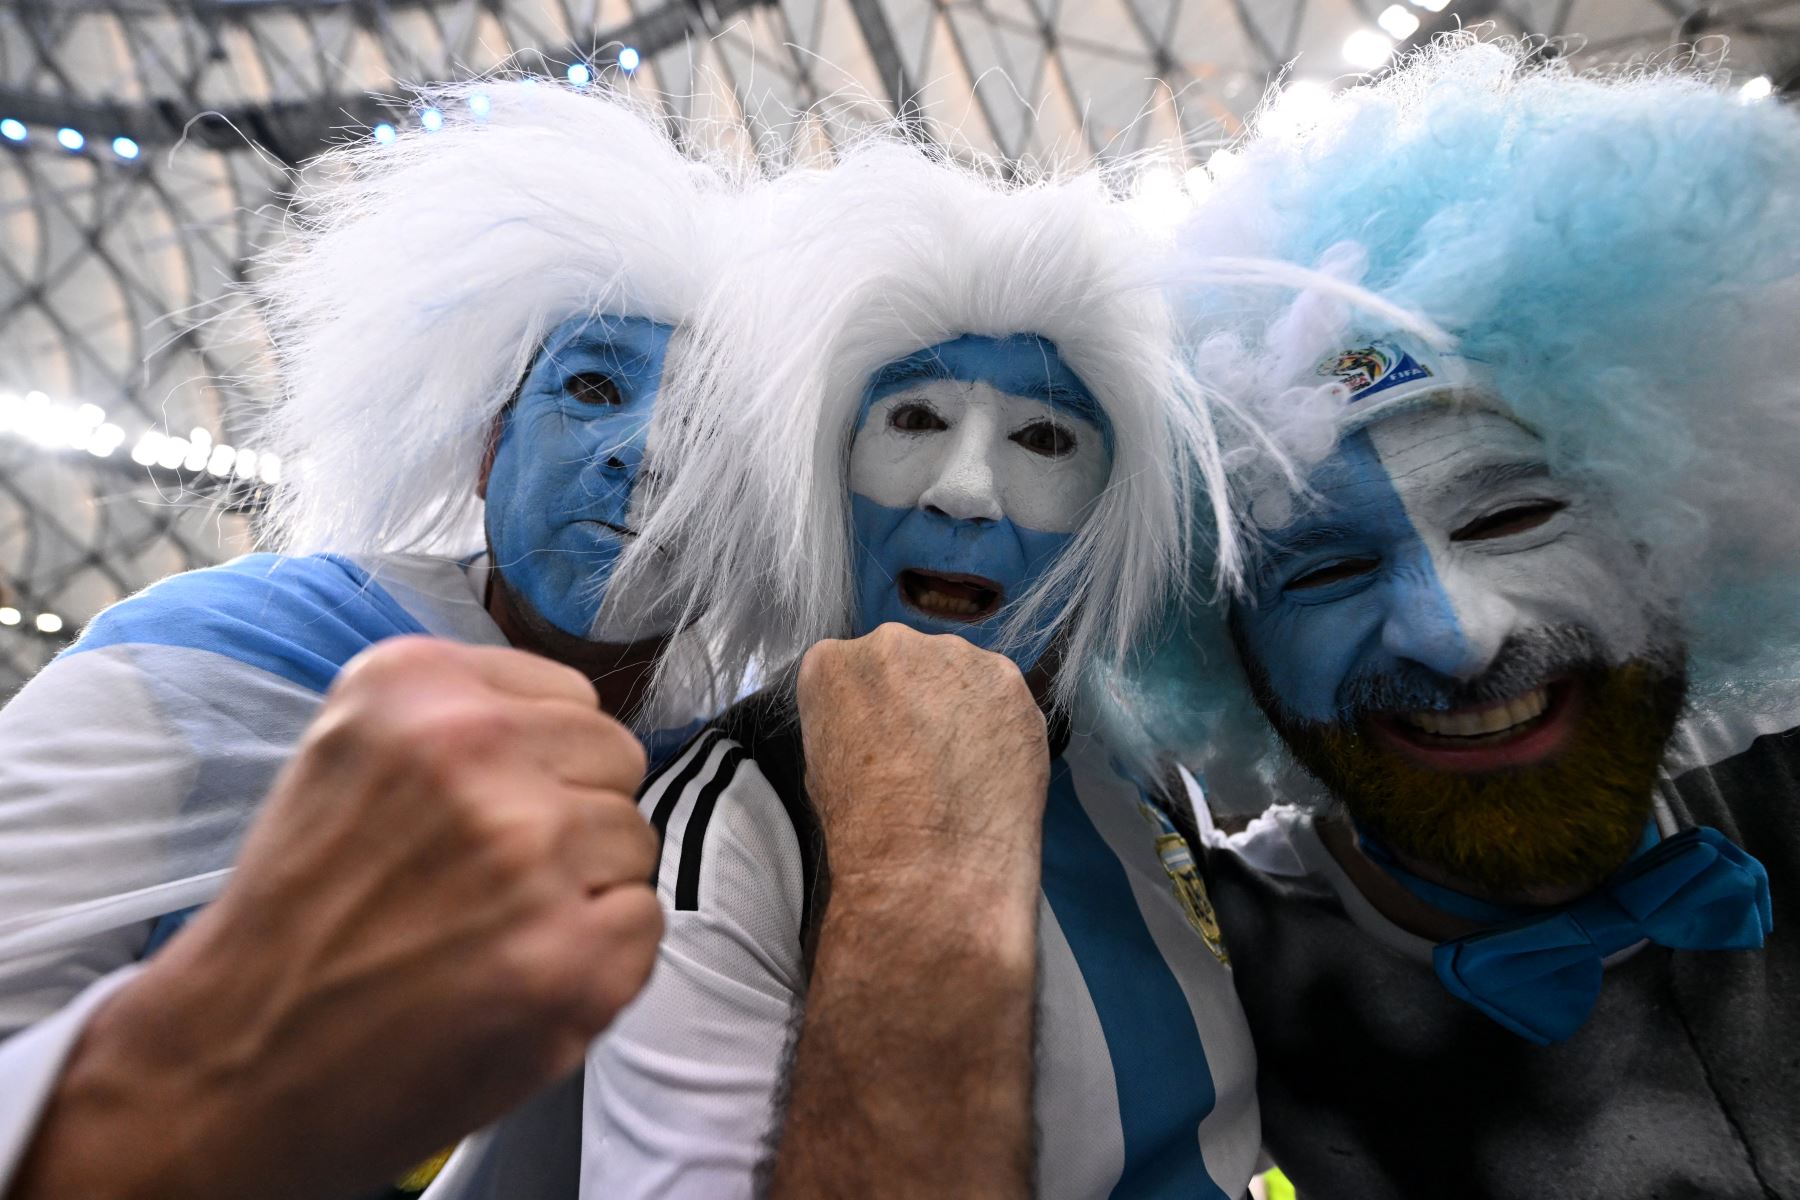 Los seguidores de Argentina animan en las gradas antes del partido de fútbol final de la Copa Mundial Qatar 2022 entre Argentina y Francia en el Estadio Lusail en Lusail, al norte de Doha, el 18 de diciembre de 2022.

Foto: AFP